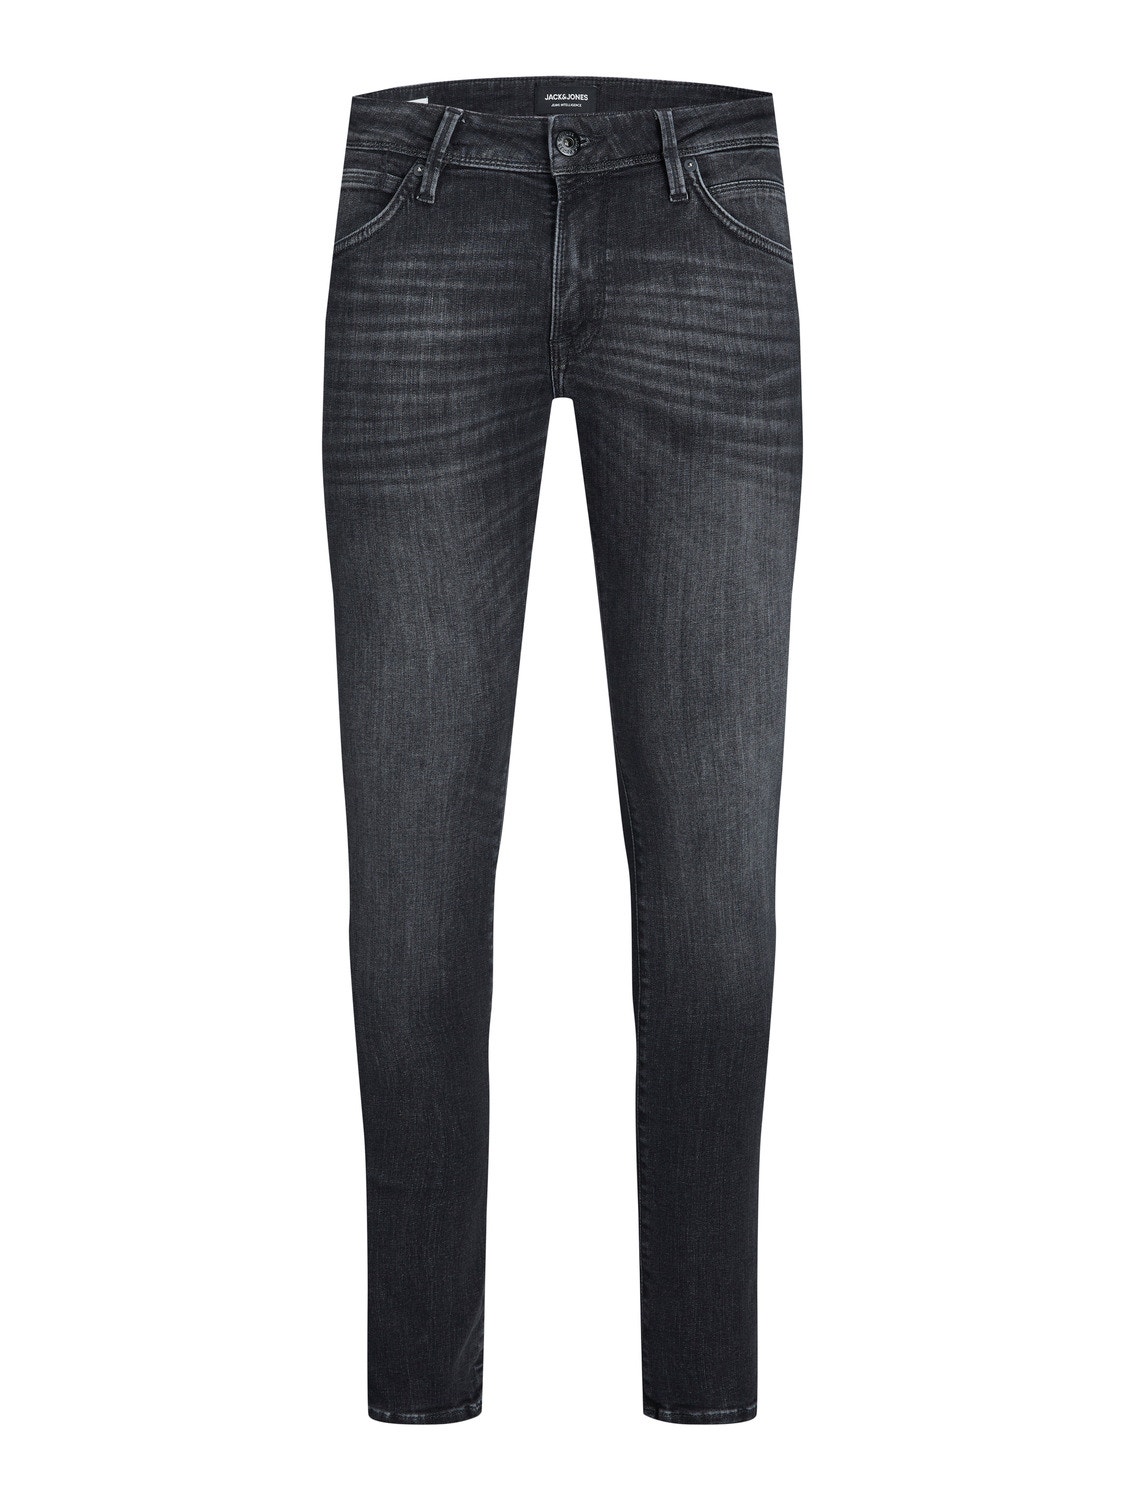 JJILIAM JJFOX BL 655 50SPS Skinny fit jeans with 70% discount! | Jack ...